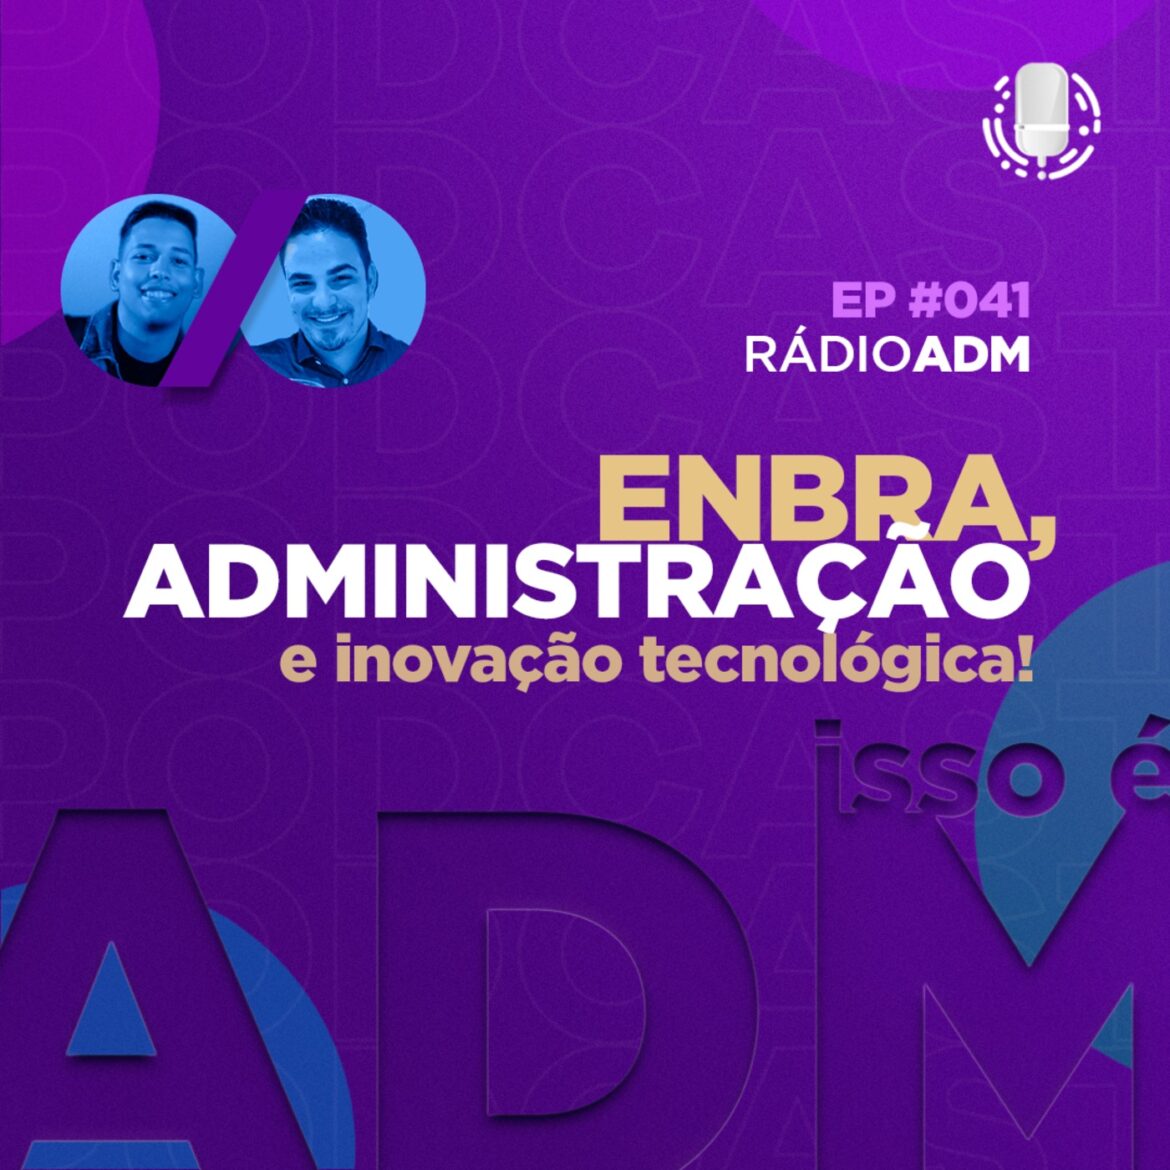 Episode 41: #041: Encontro Brasileiro de Administração